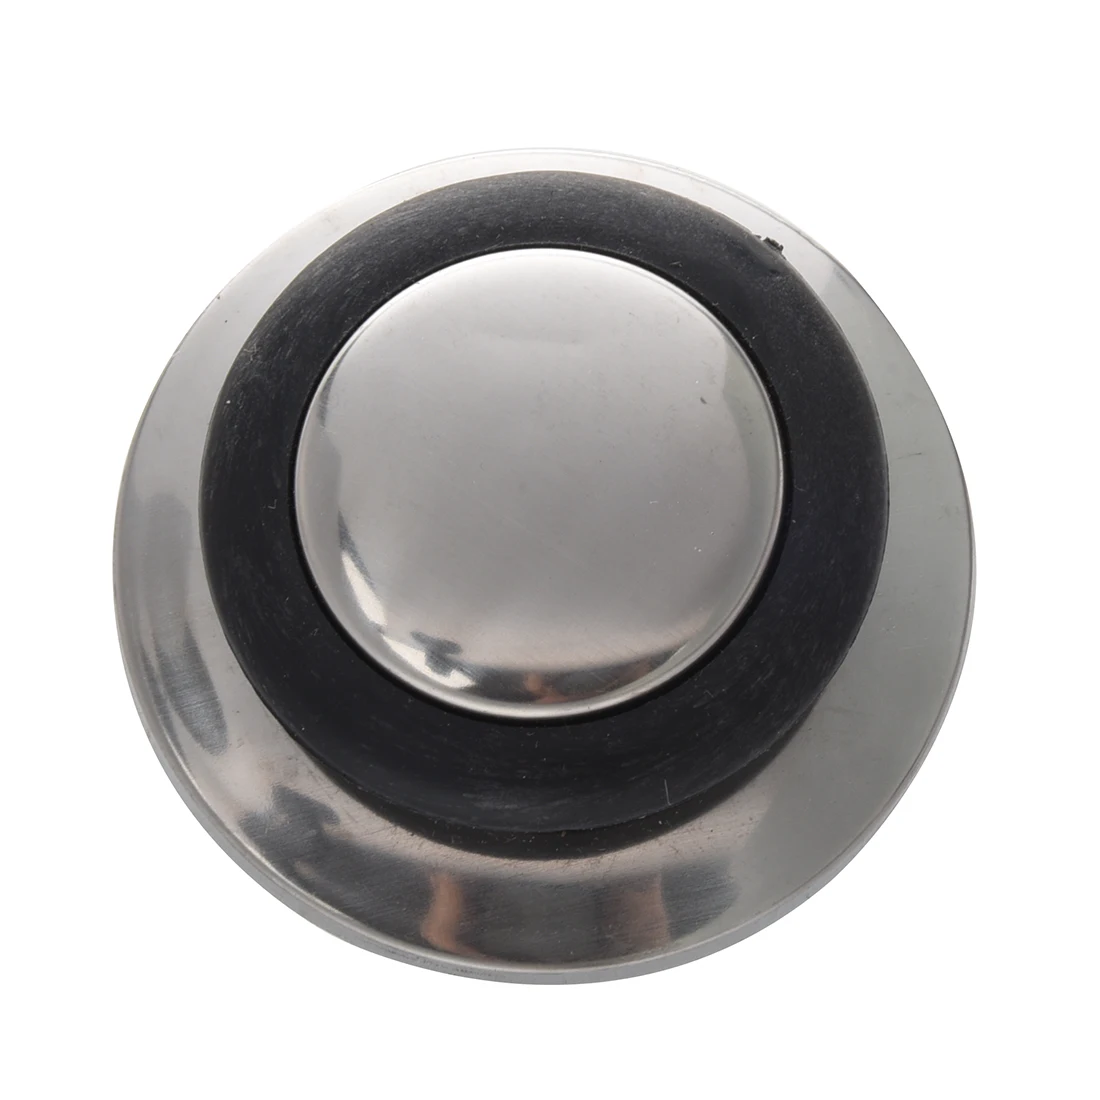 58 мм домашний диаметр Пластиковые обрабатывать Серебряный тон база горшок крышка ручка